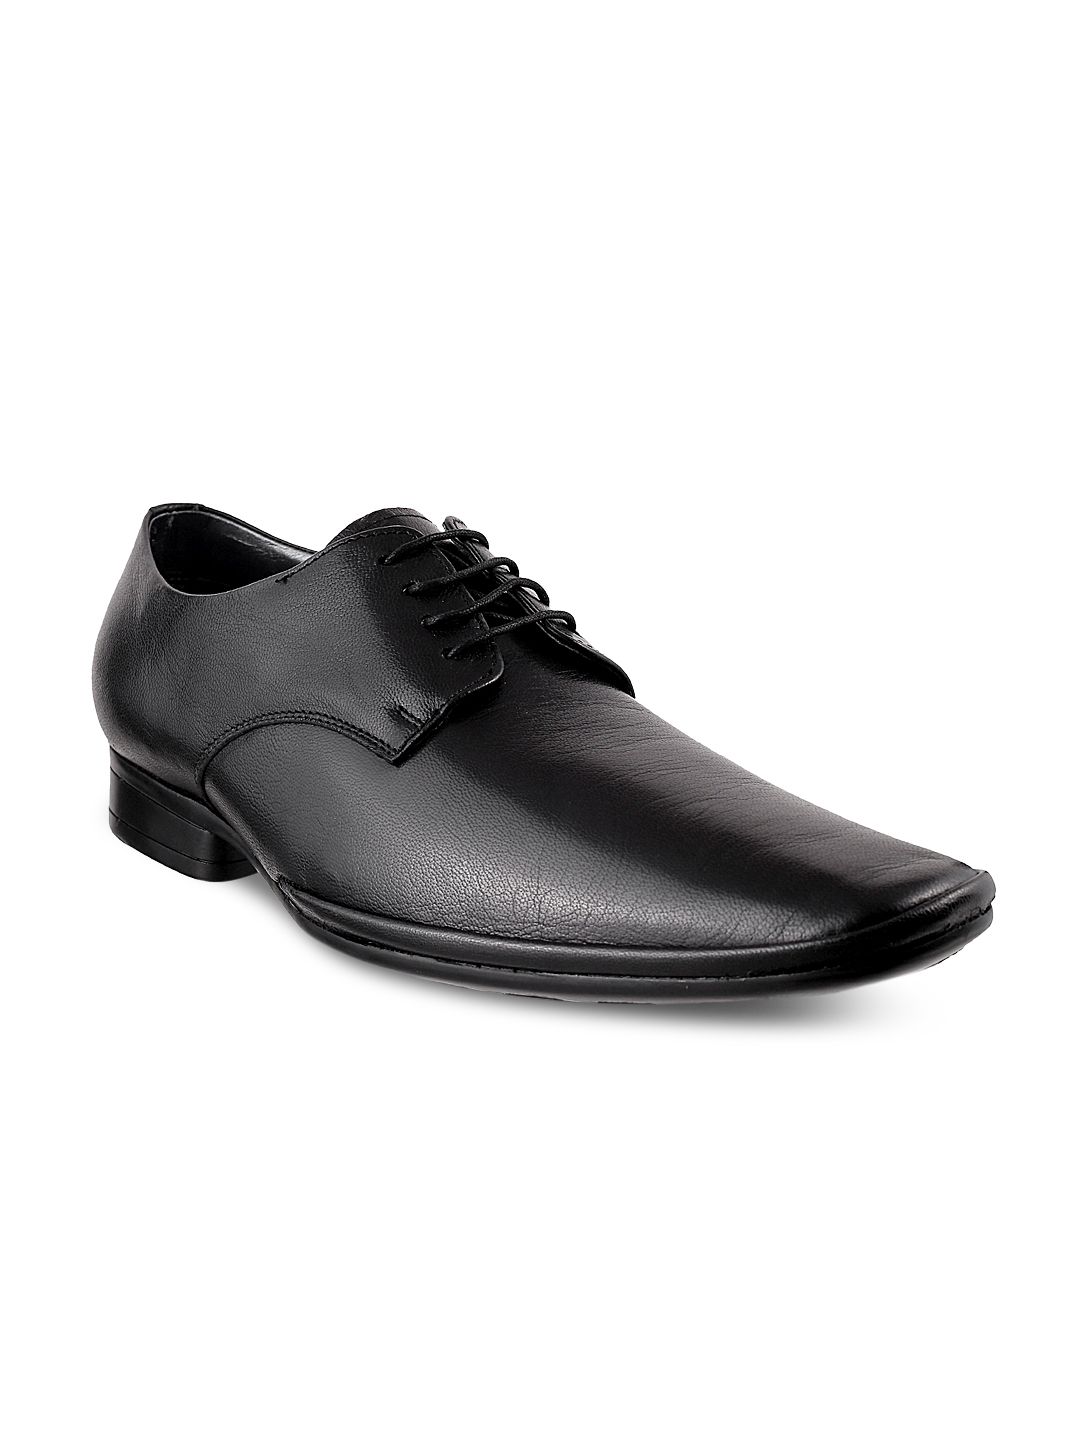 Buy Mochi Men Black Formal Shoes - 633 - Footwear for Men - 776744